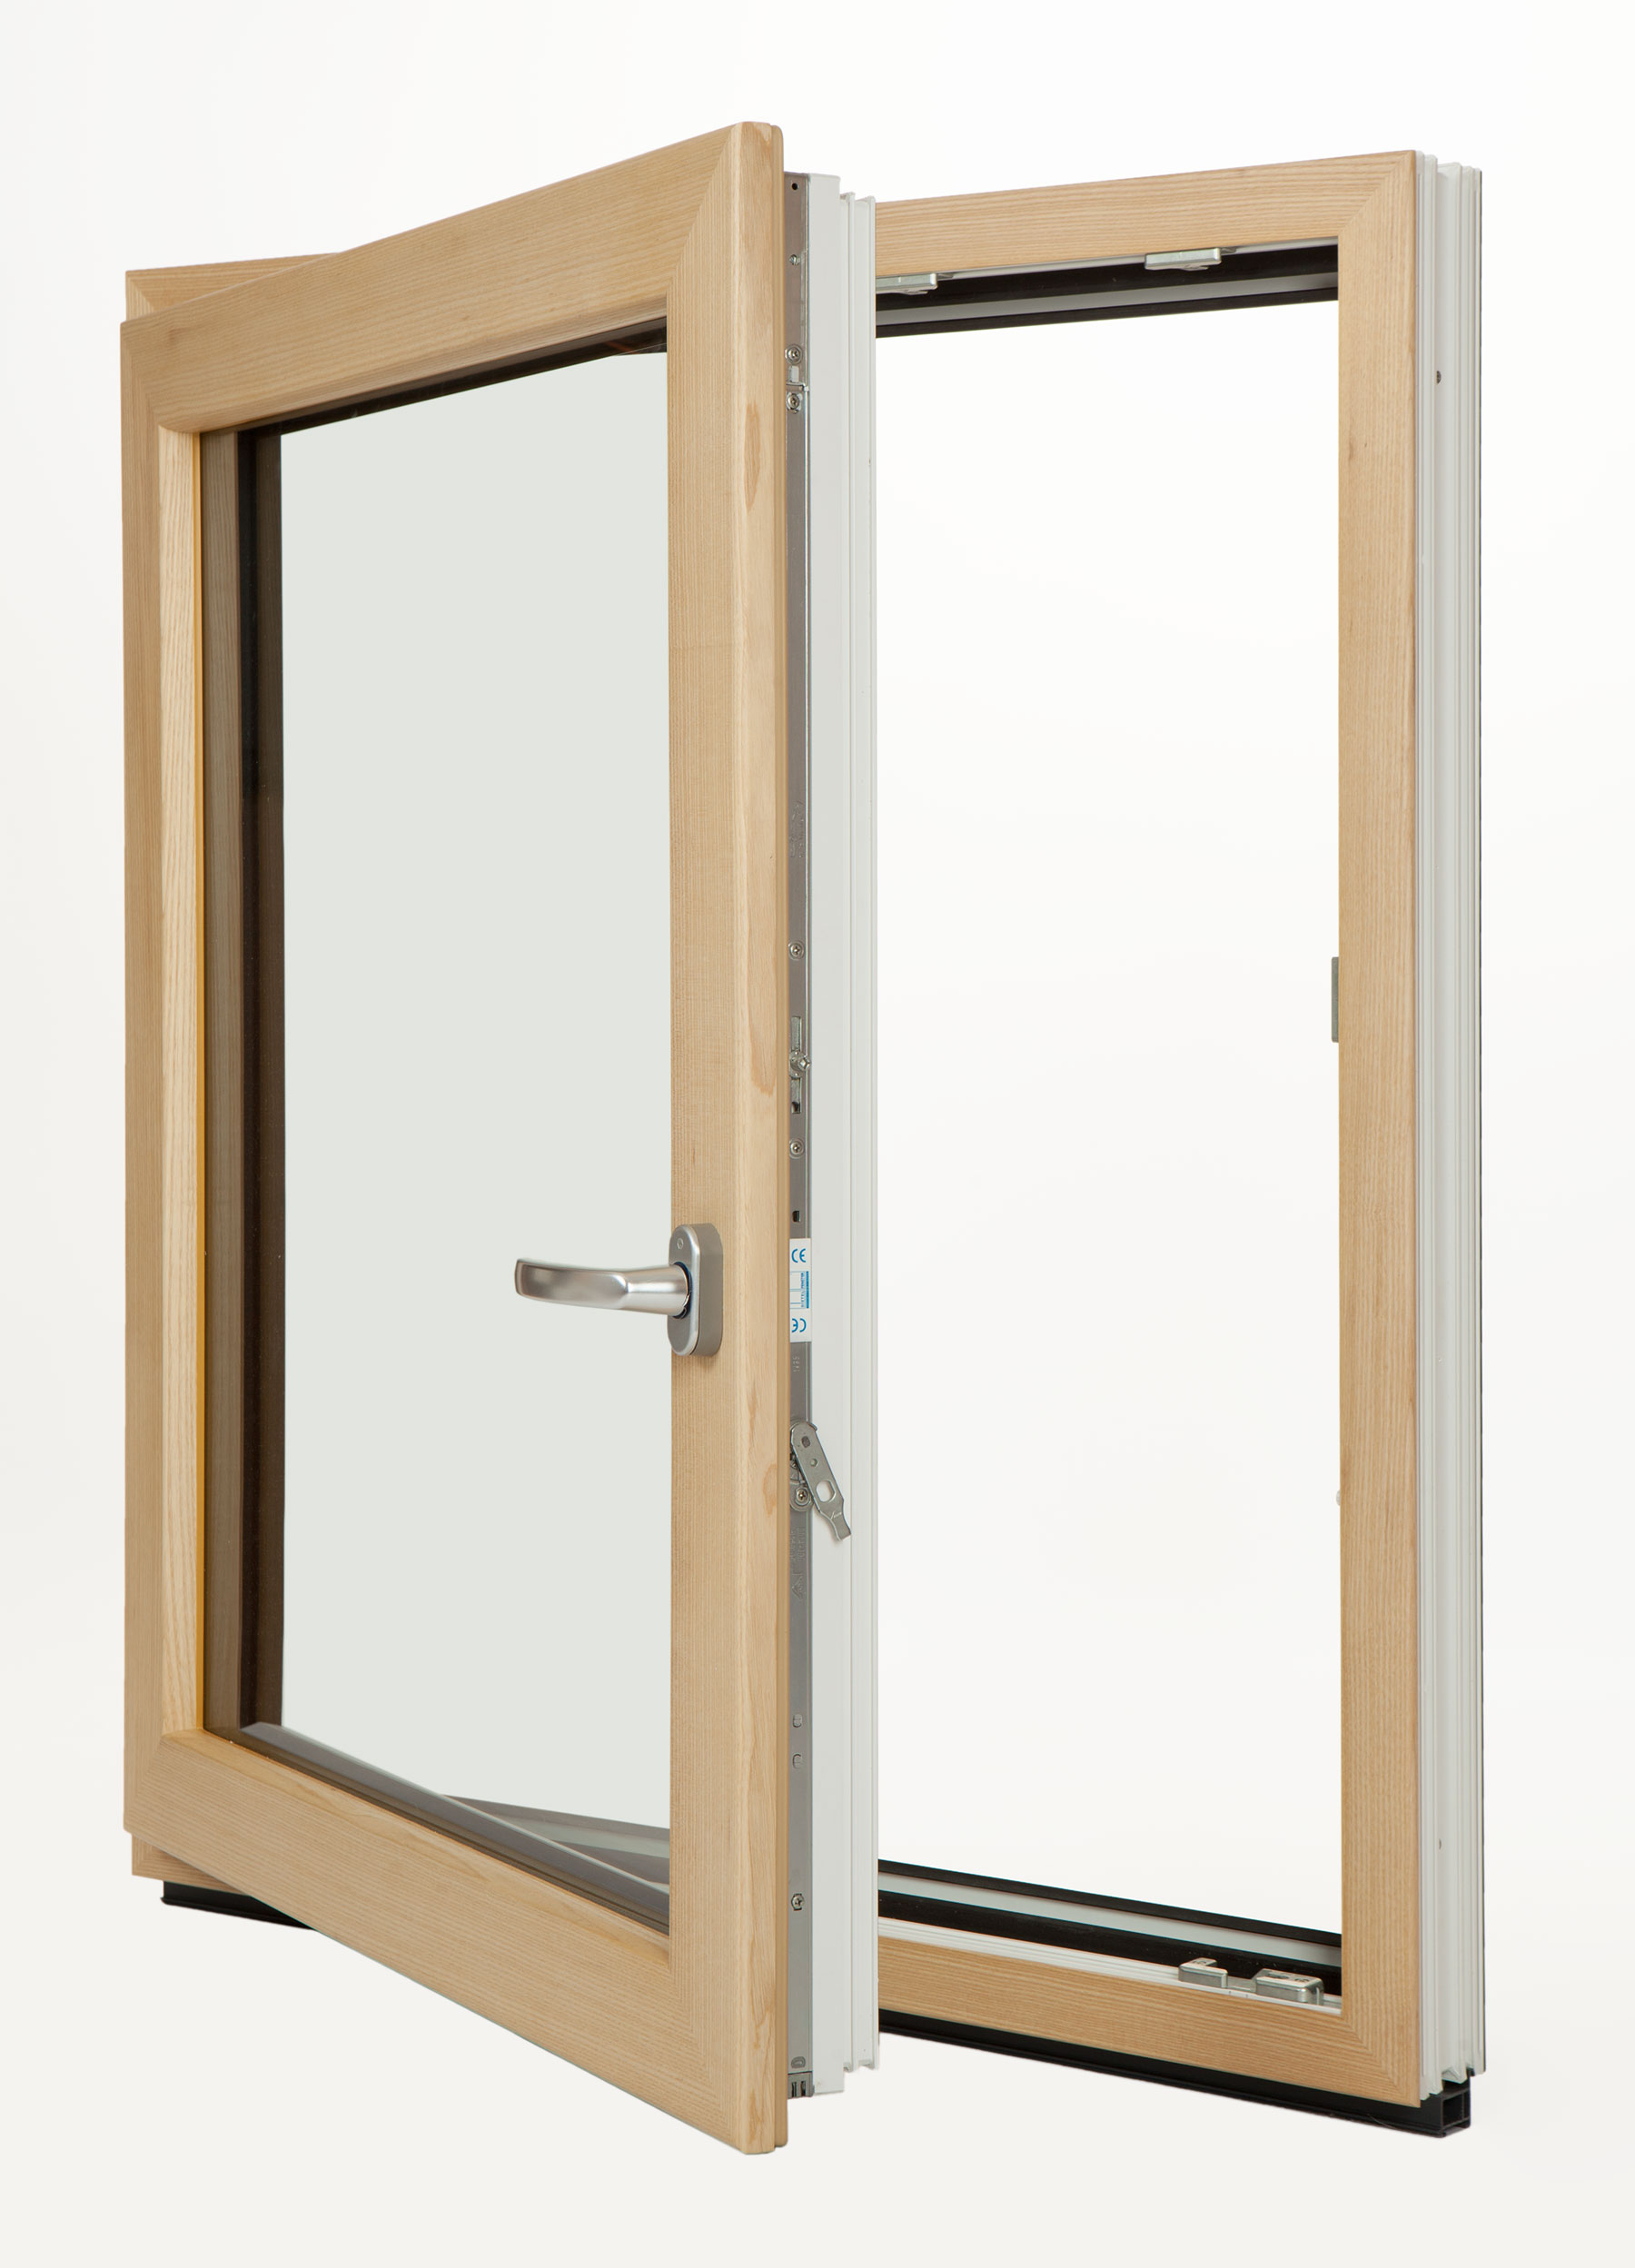 Nové dizajnové okno EforteFusion kombinuje to najlepšie z troch svetov: PVC, drevo a hliník. Inovatívny systém spĺňa parametre pre pasívne domy.